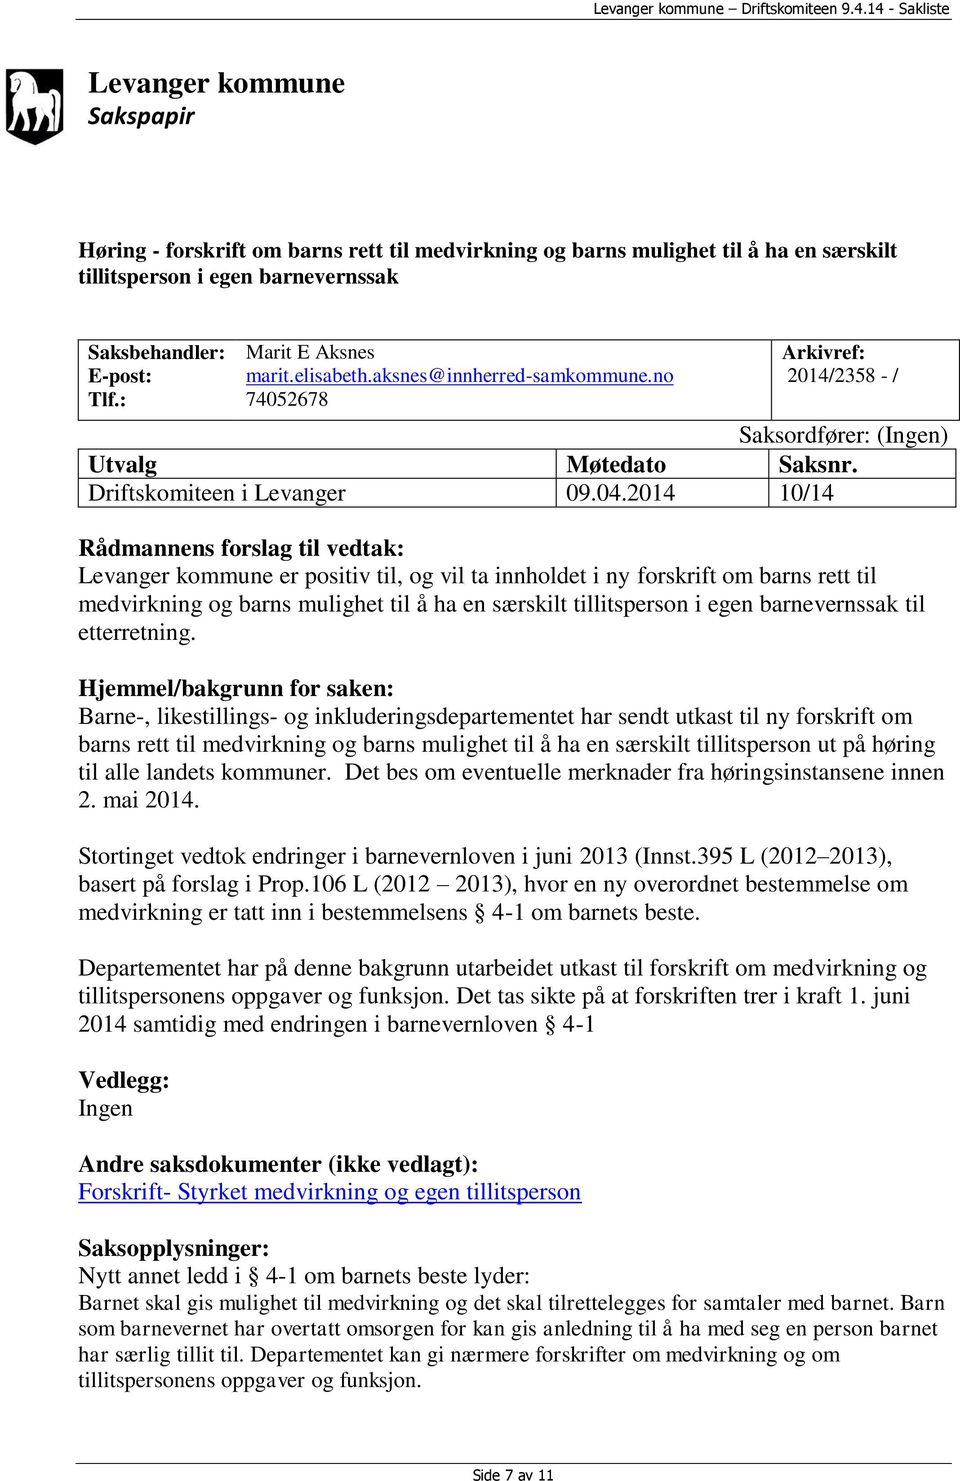 2014 10/14 Rådmannens forslag til vedtak: Levanger kommune er positiv til, og vil ta innholdet i ny forskrift om barns rett til medvirkning og barns mulighet til å ha en særskilt tillitsperson i egen